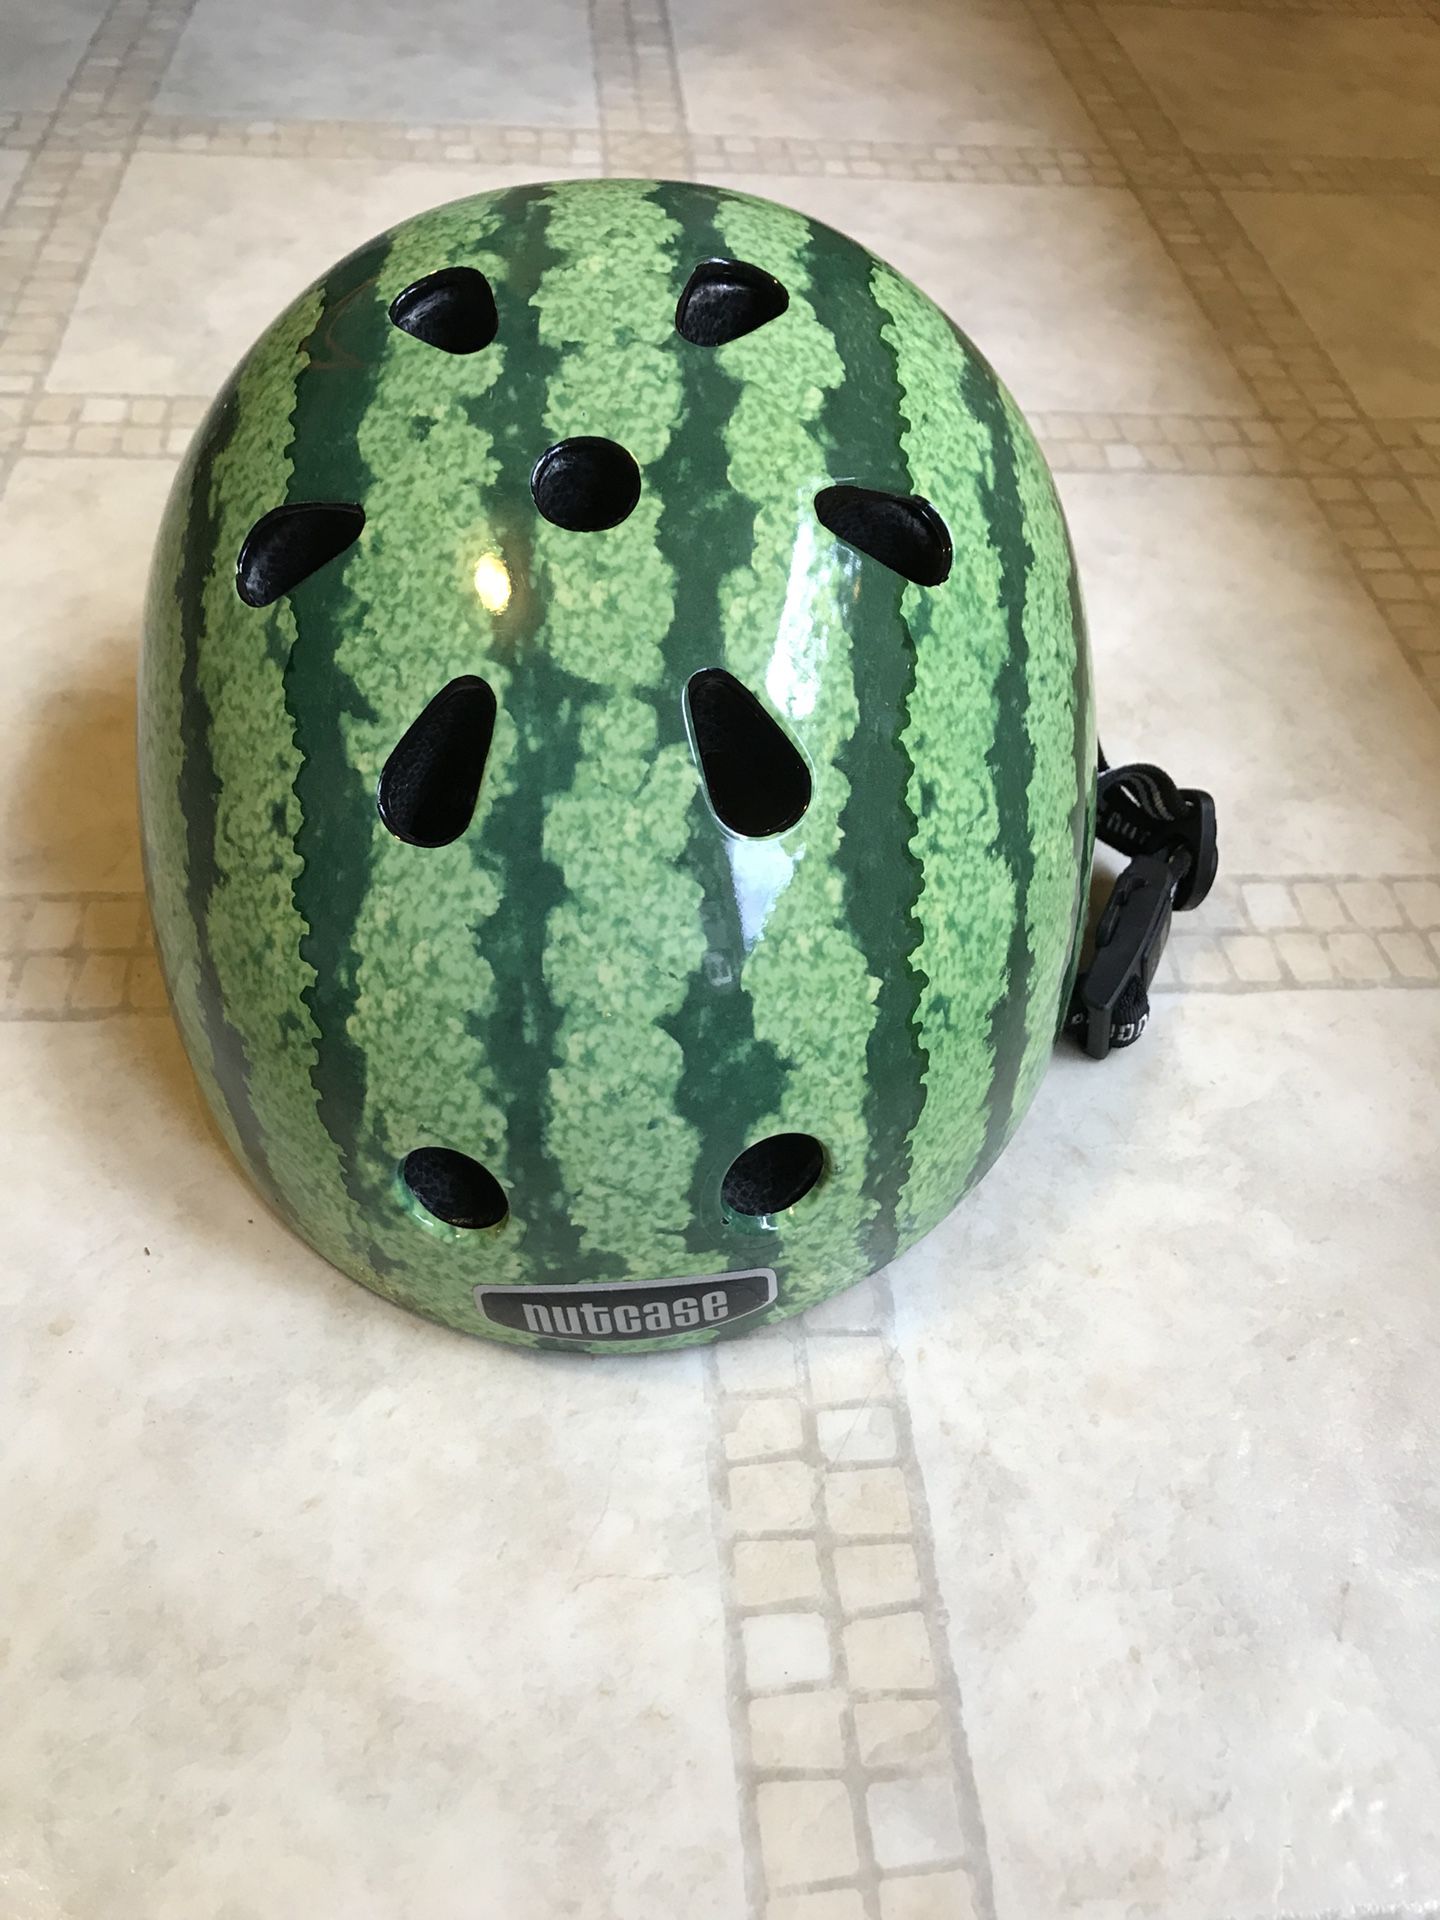 Nutcase bike helmet